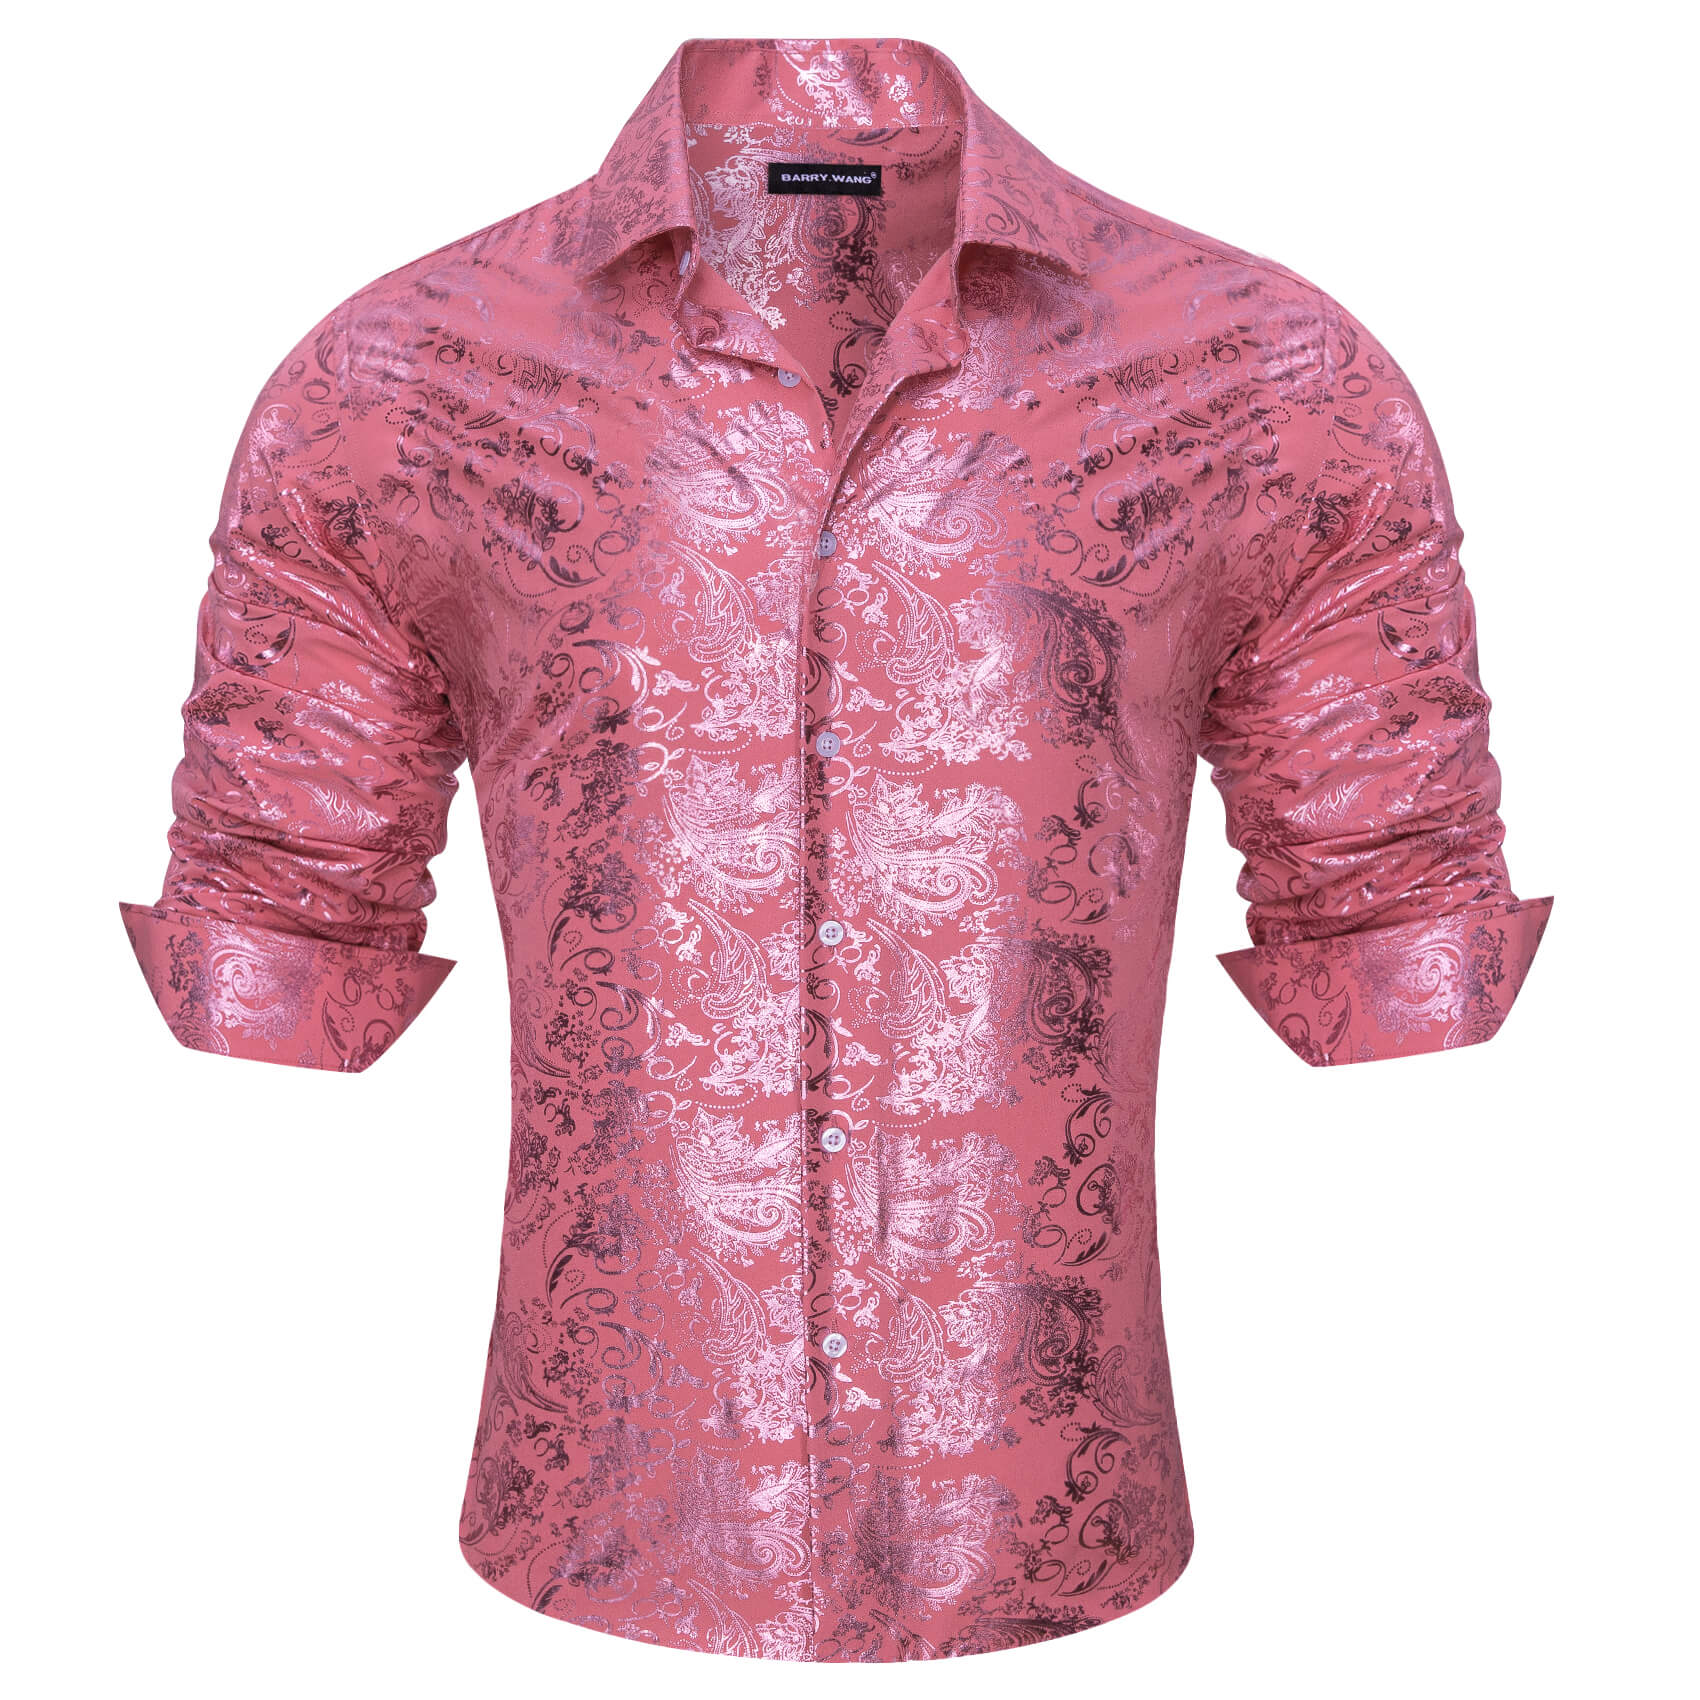 Barry.wang Men's Bronzing Shirt Watermelon Pink Floral Silk Shirt